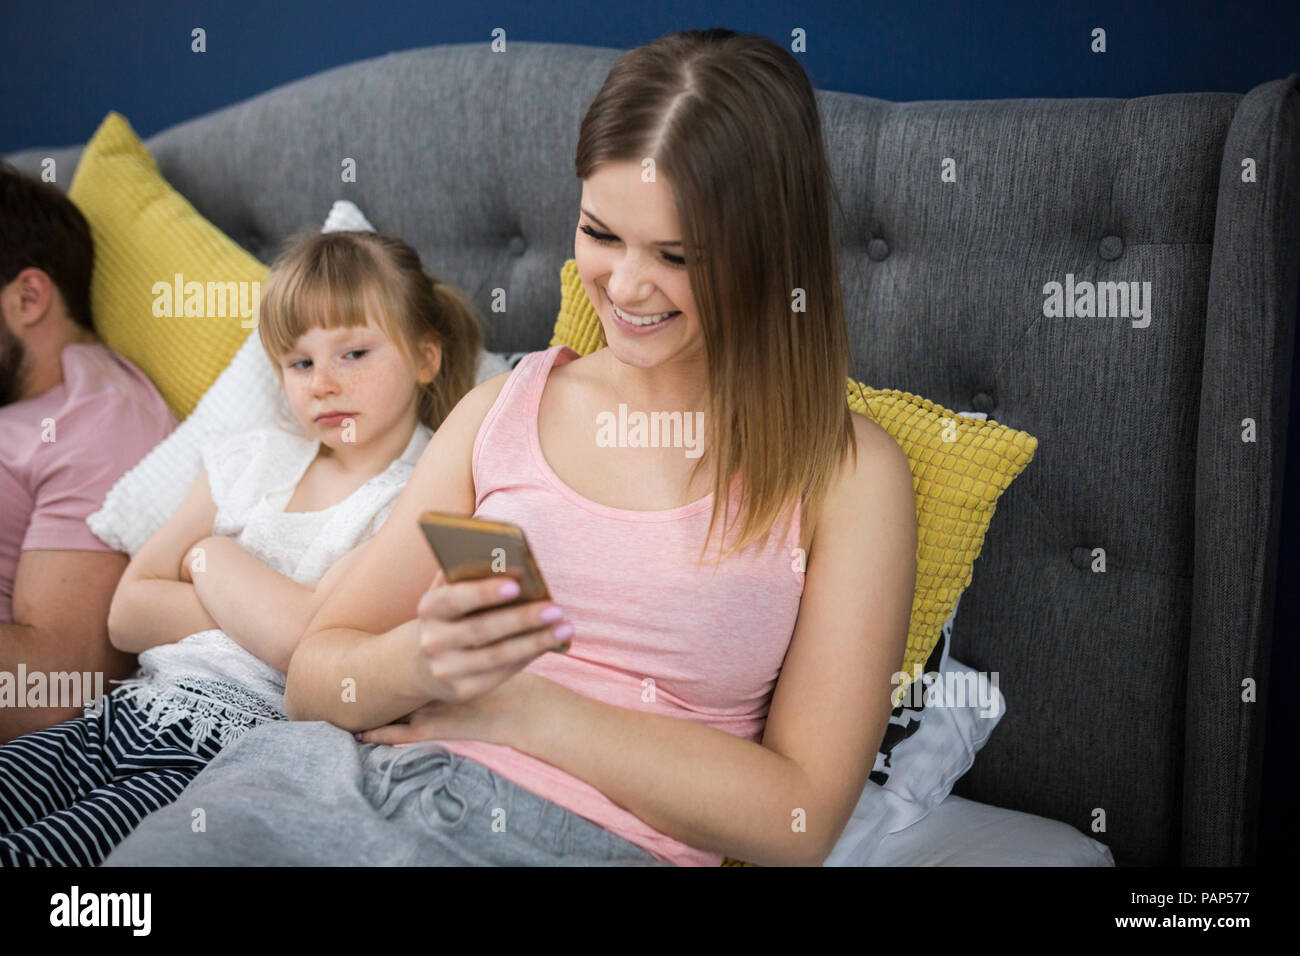 Négligé petite fille assise sur le lit avec ses parents, using smartphones Banque D'Images